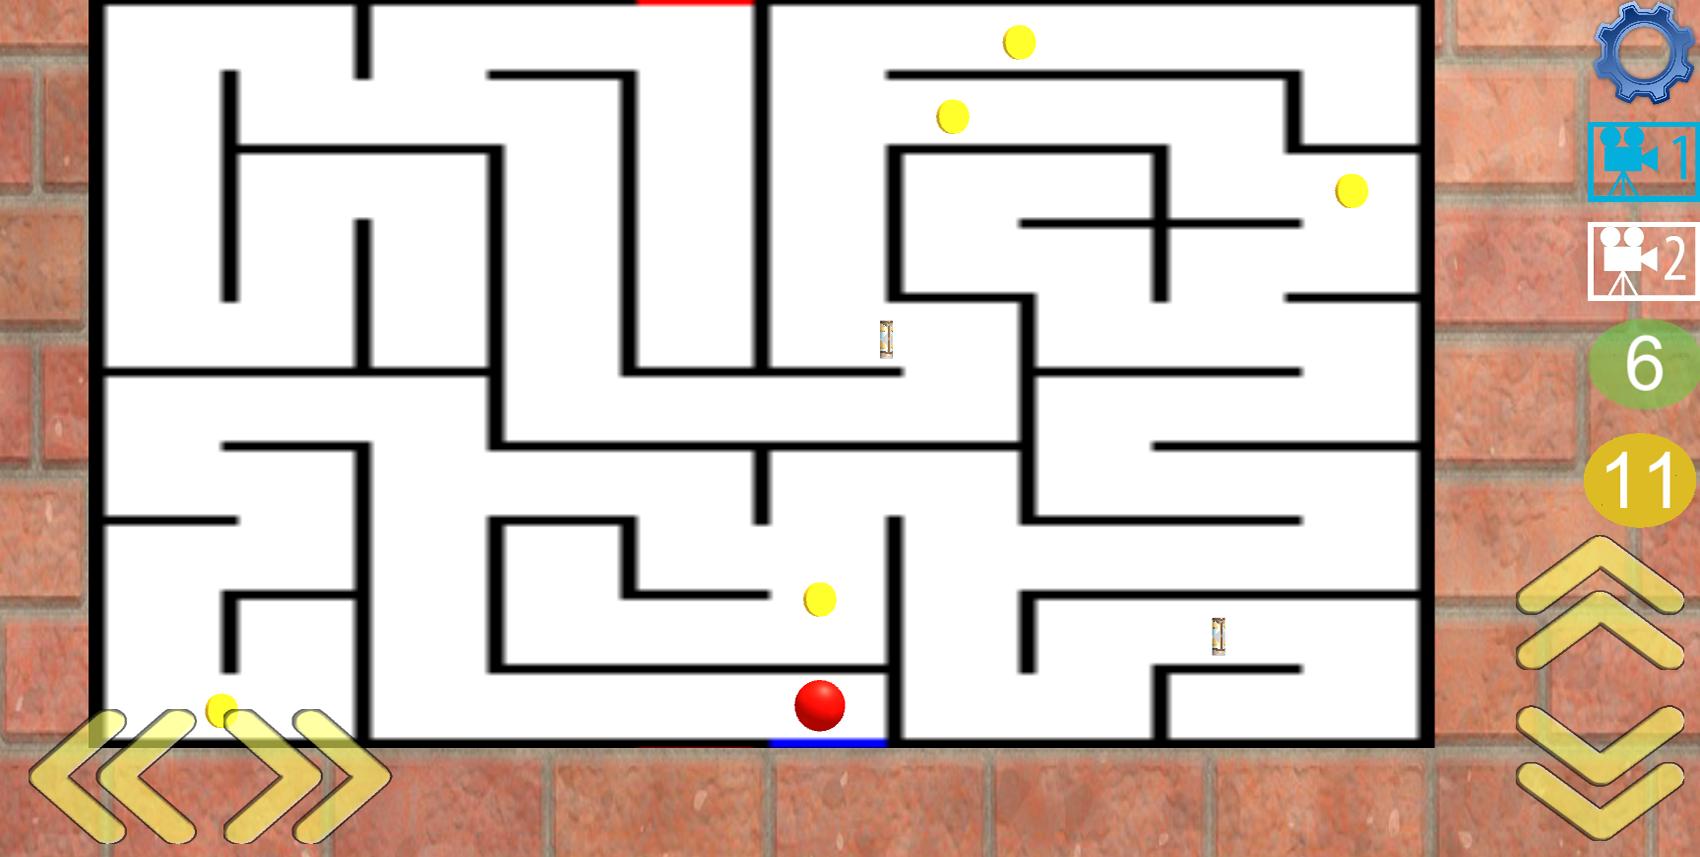 Включи роблокс лабиринт. The Maze игра. Карта Лабиринта. Roblox Лабиринт. Игра Лабиринт на андроид.